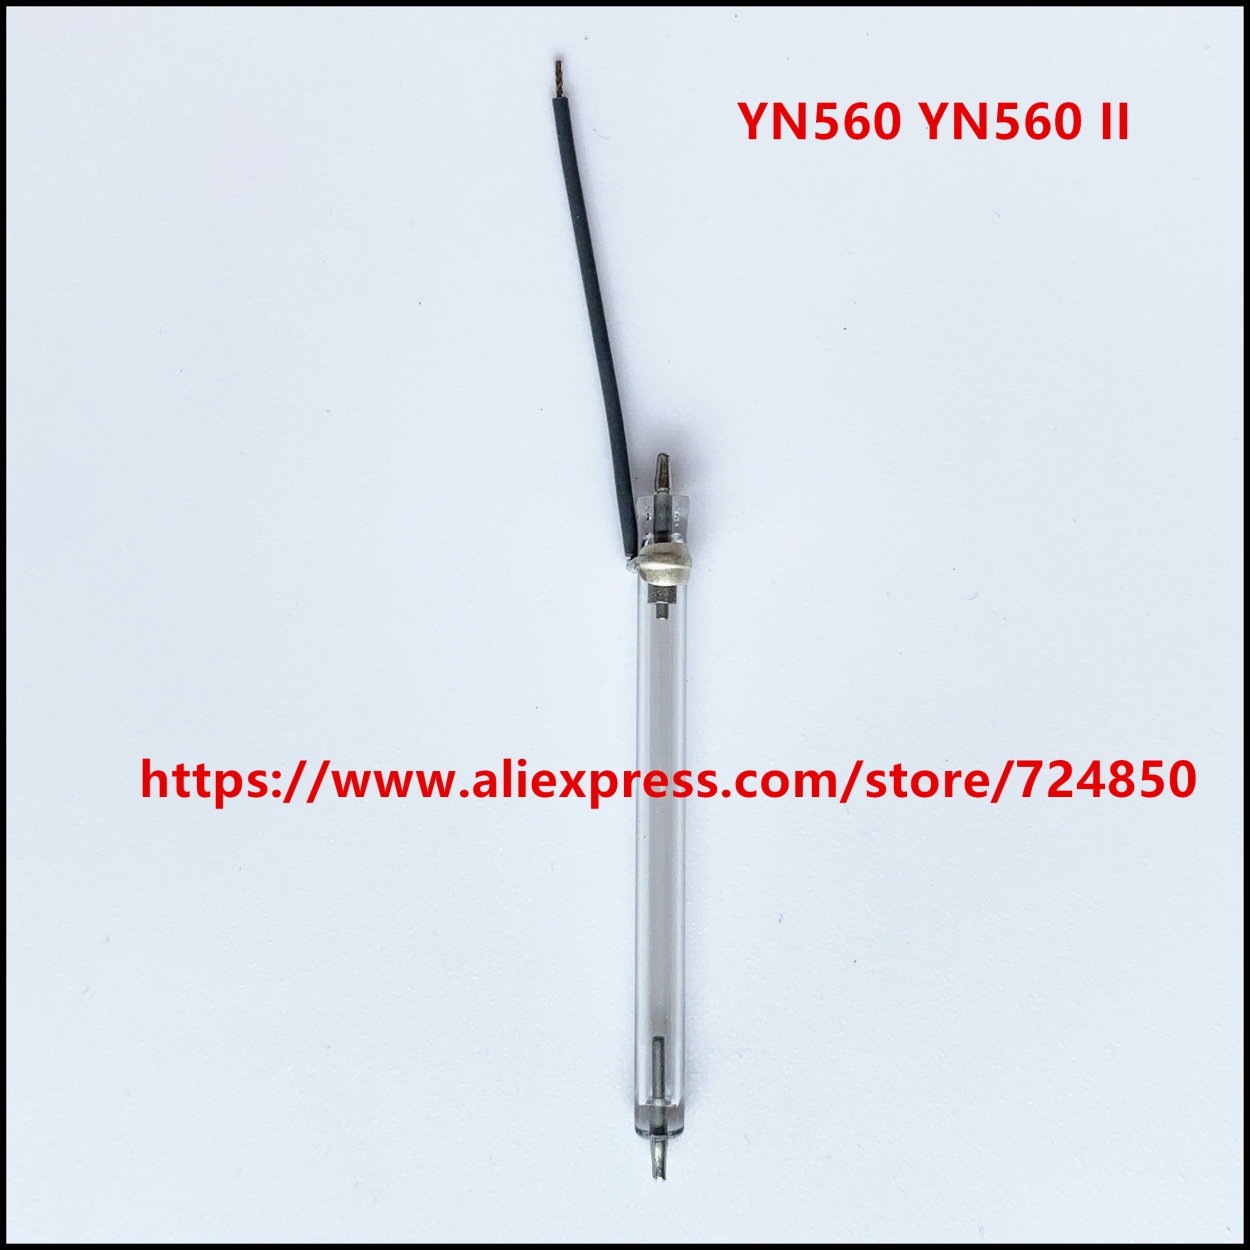 NEW SPEEDLITE Flash Tube XE Xenon Lamp For YONGNUO YN-560 YN